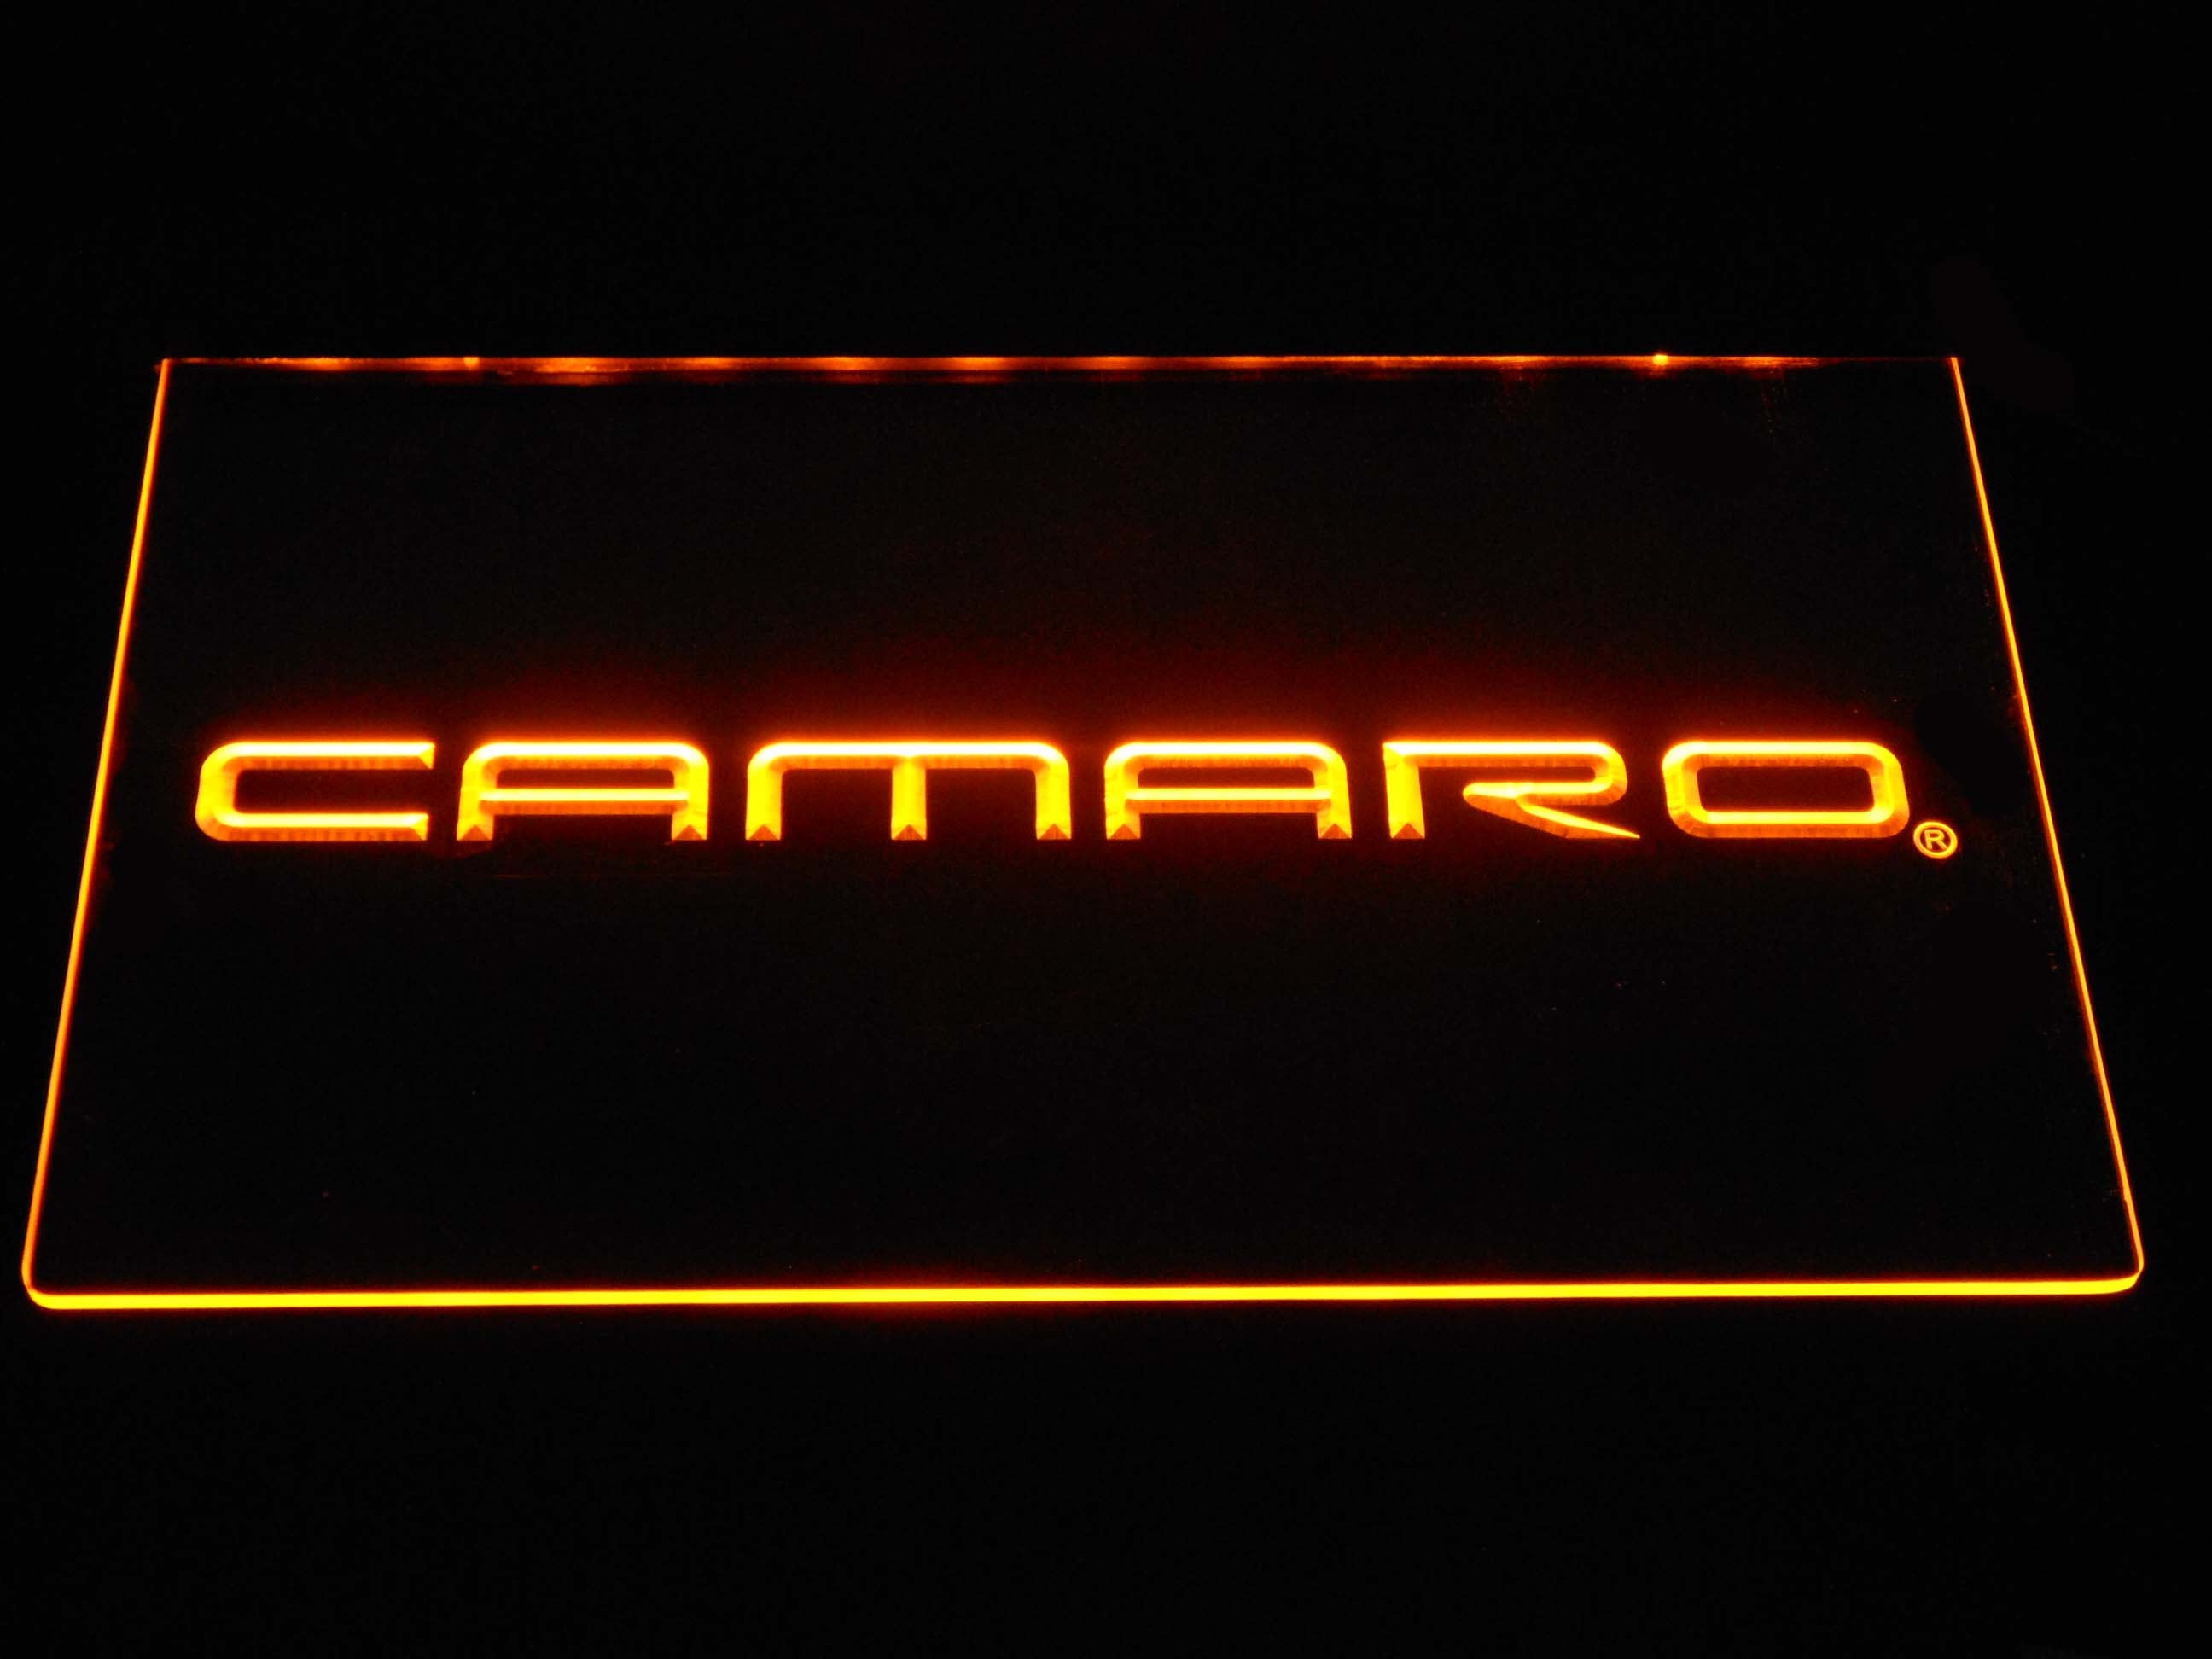 Chevrolet Camaro Neon Light LED Sign